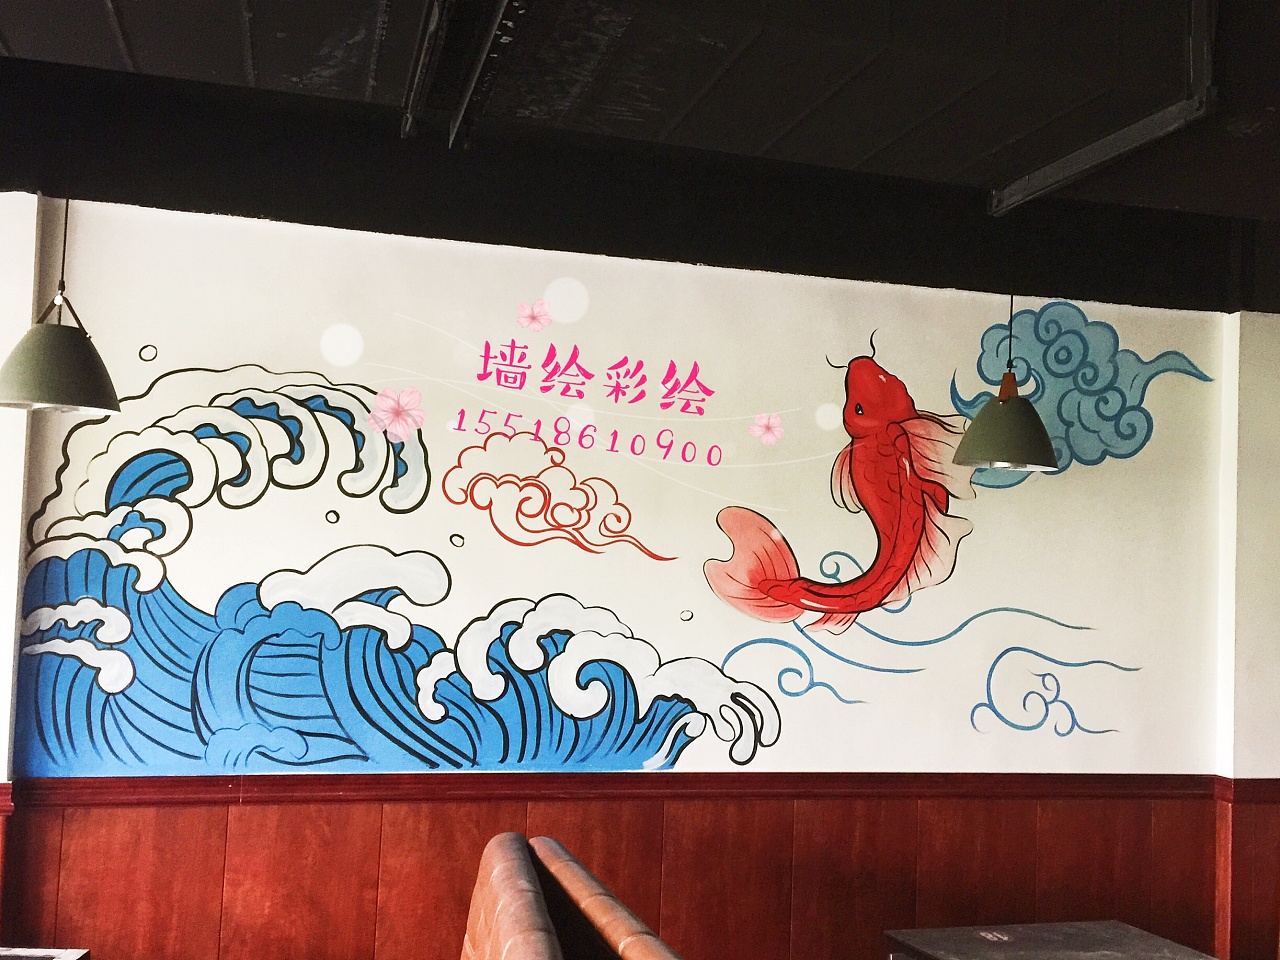 亳州饭店餐厅墙绘彩绘墙体彩绘喷绘手绘